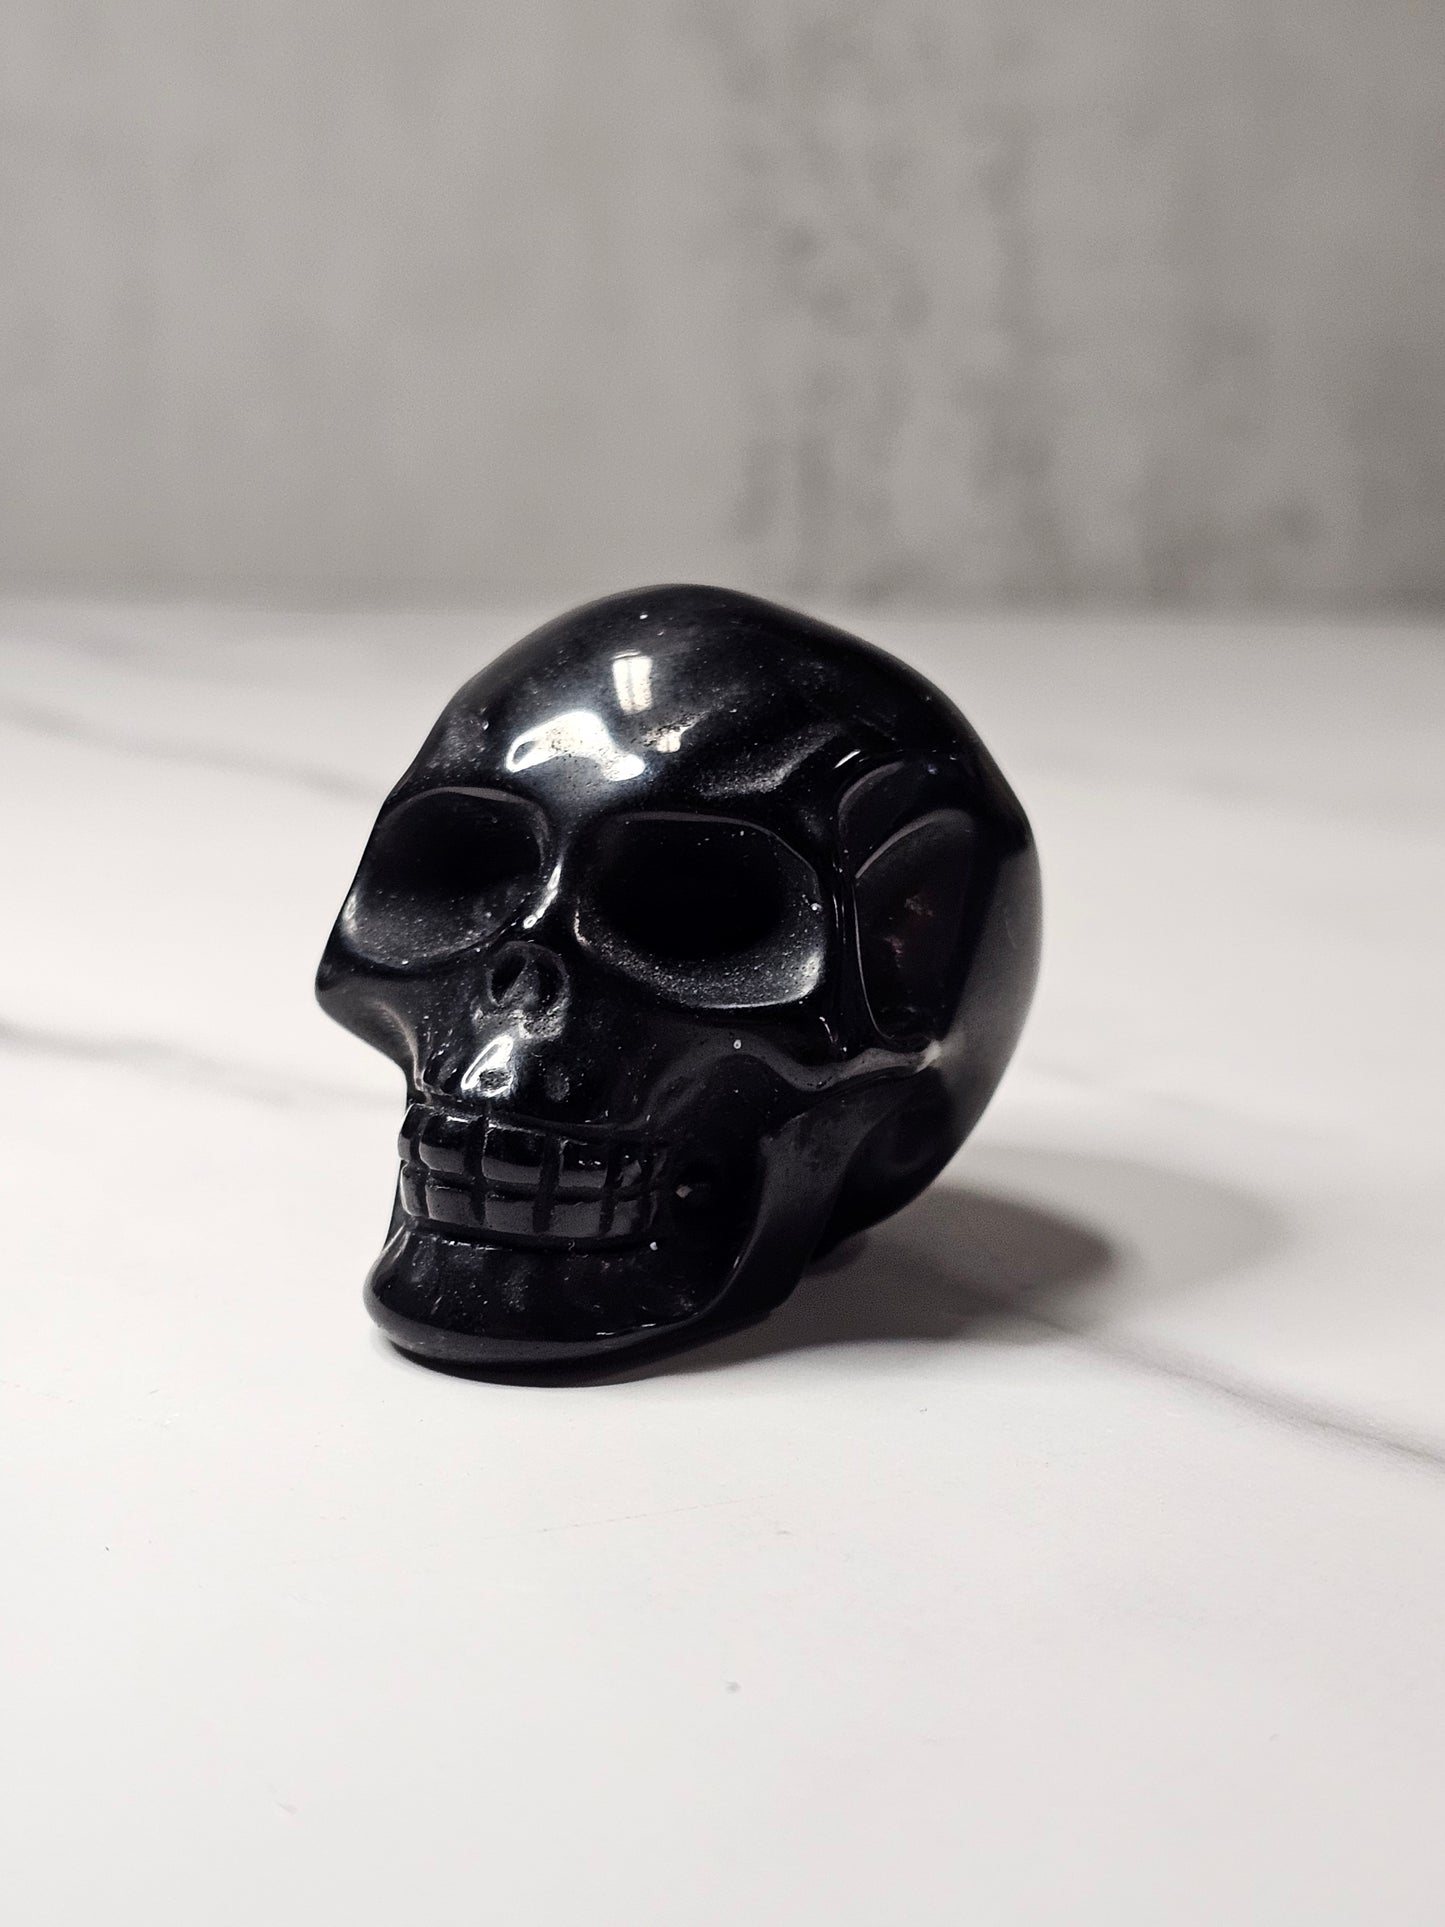 Obsidian Skull Carving